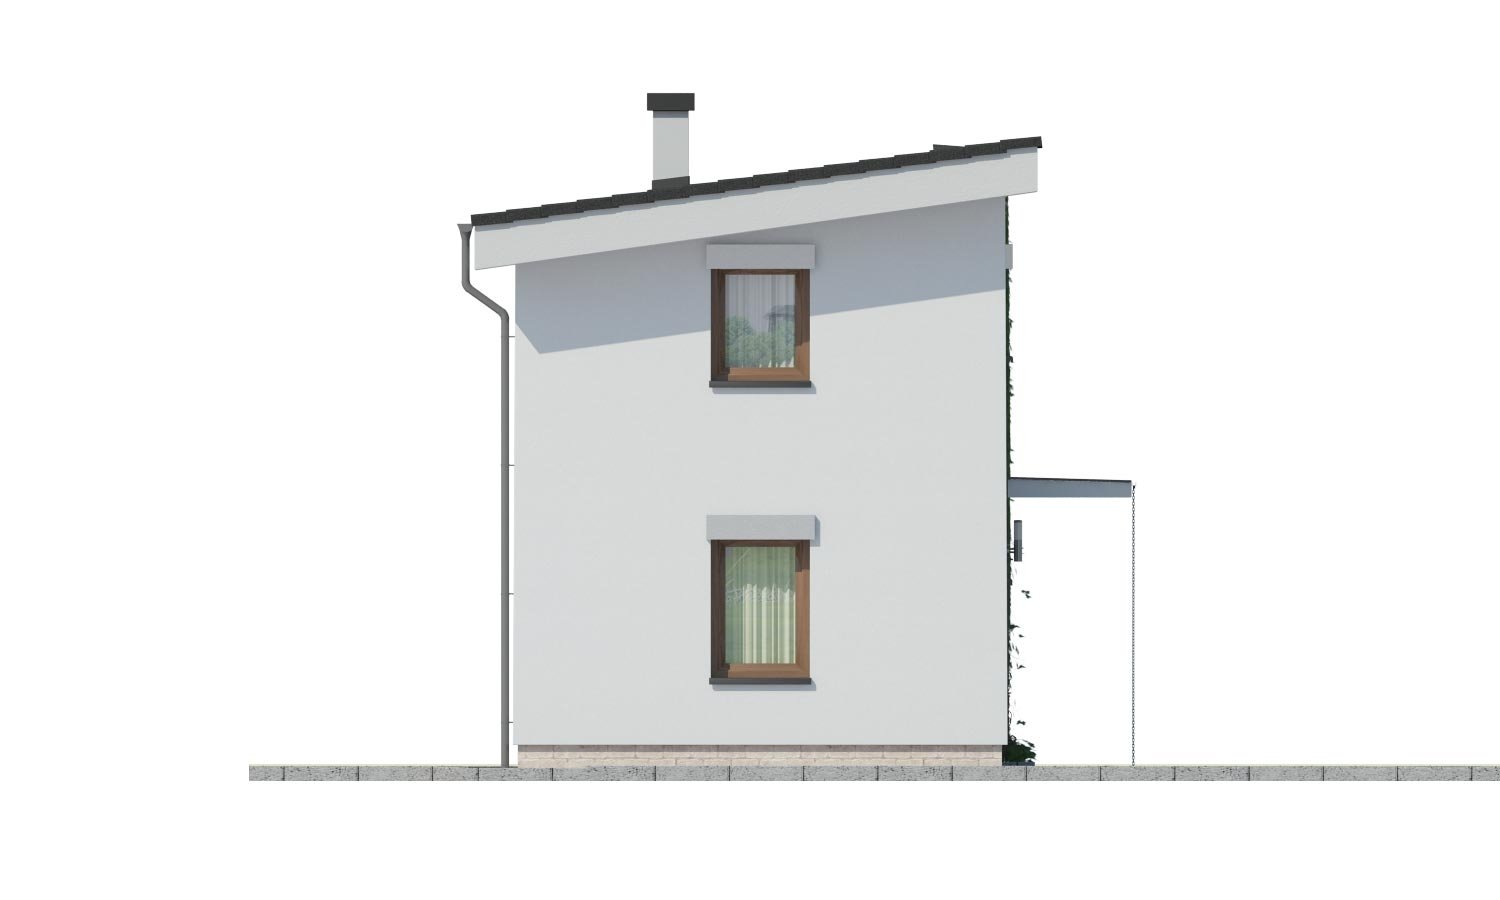 Pohľad 4. - Levný dům na úzký pozemek s nízkou pultovou střechou, vhodný i jako zahradní domek.